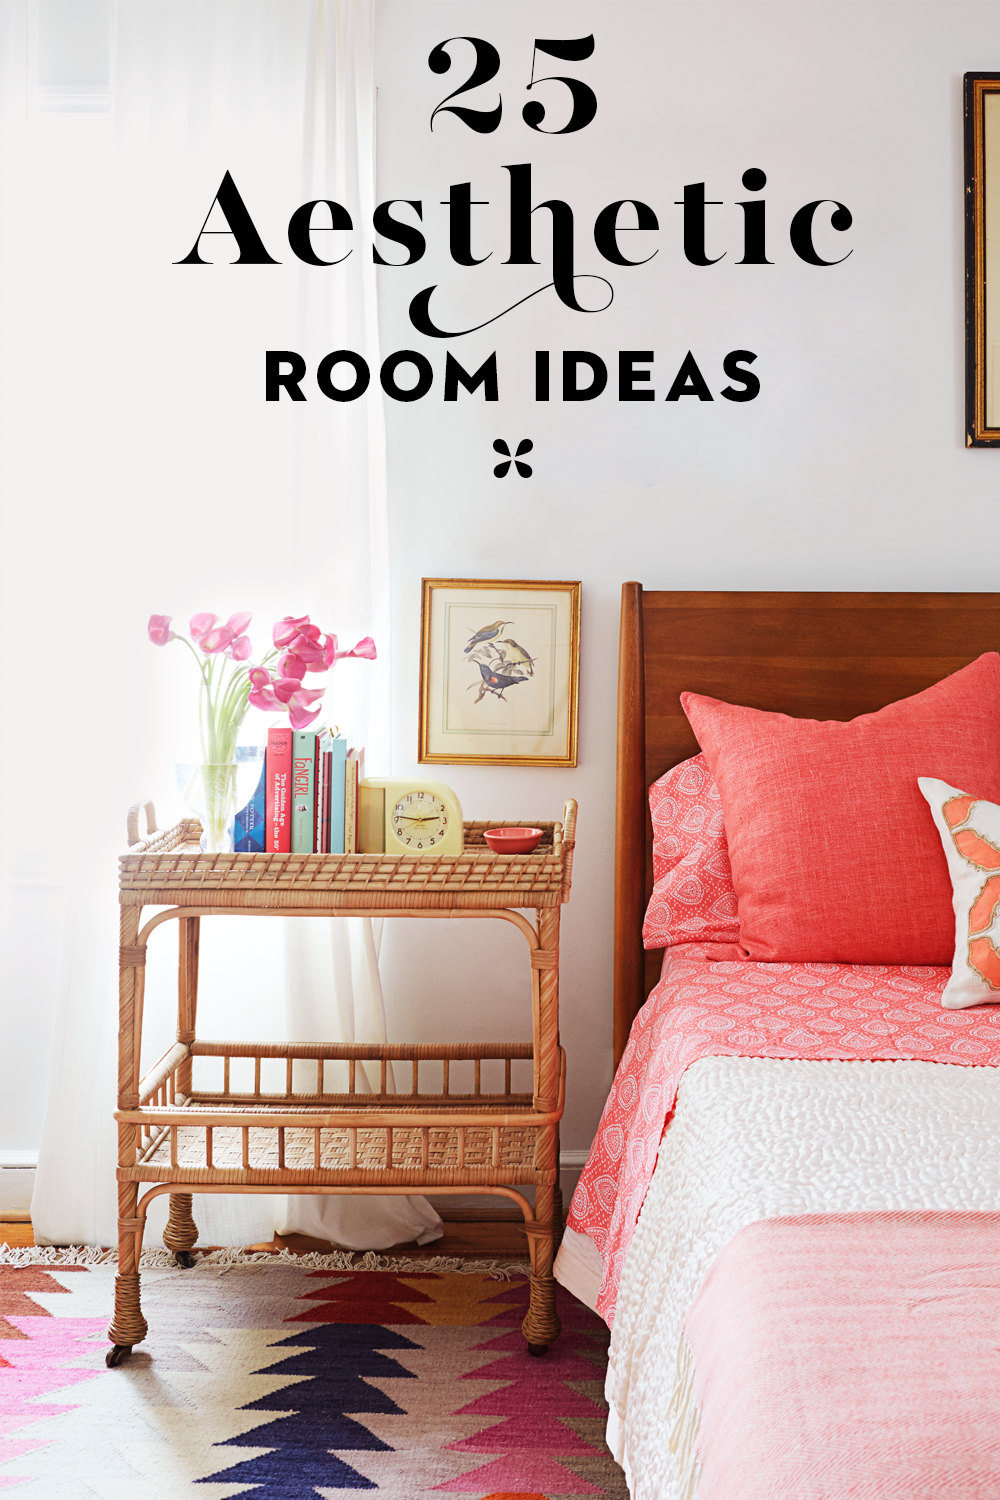 10 EASY Aesthetic Room Decor Ideas On A Budget